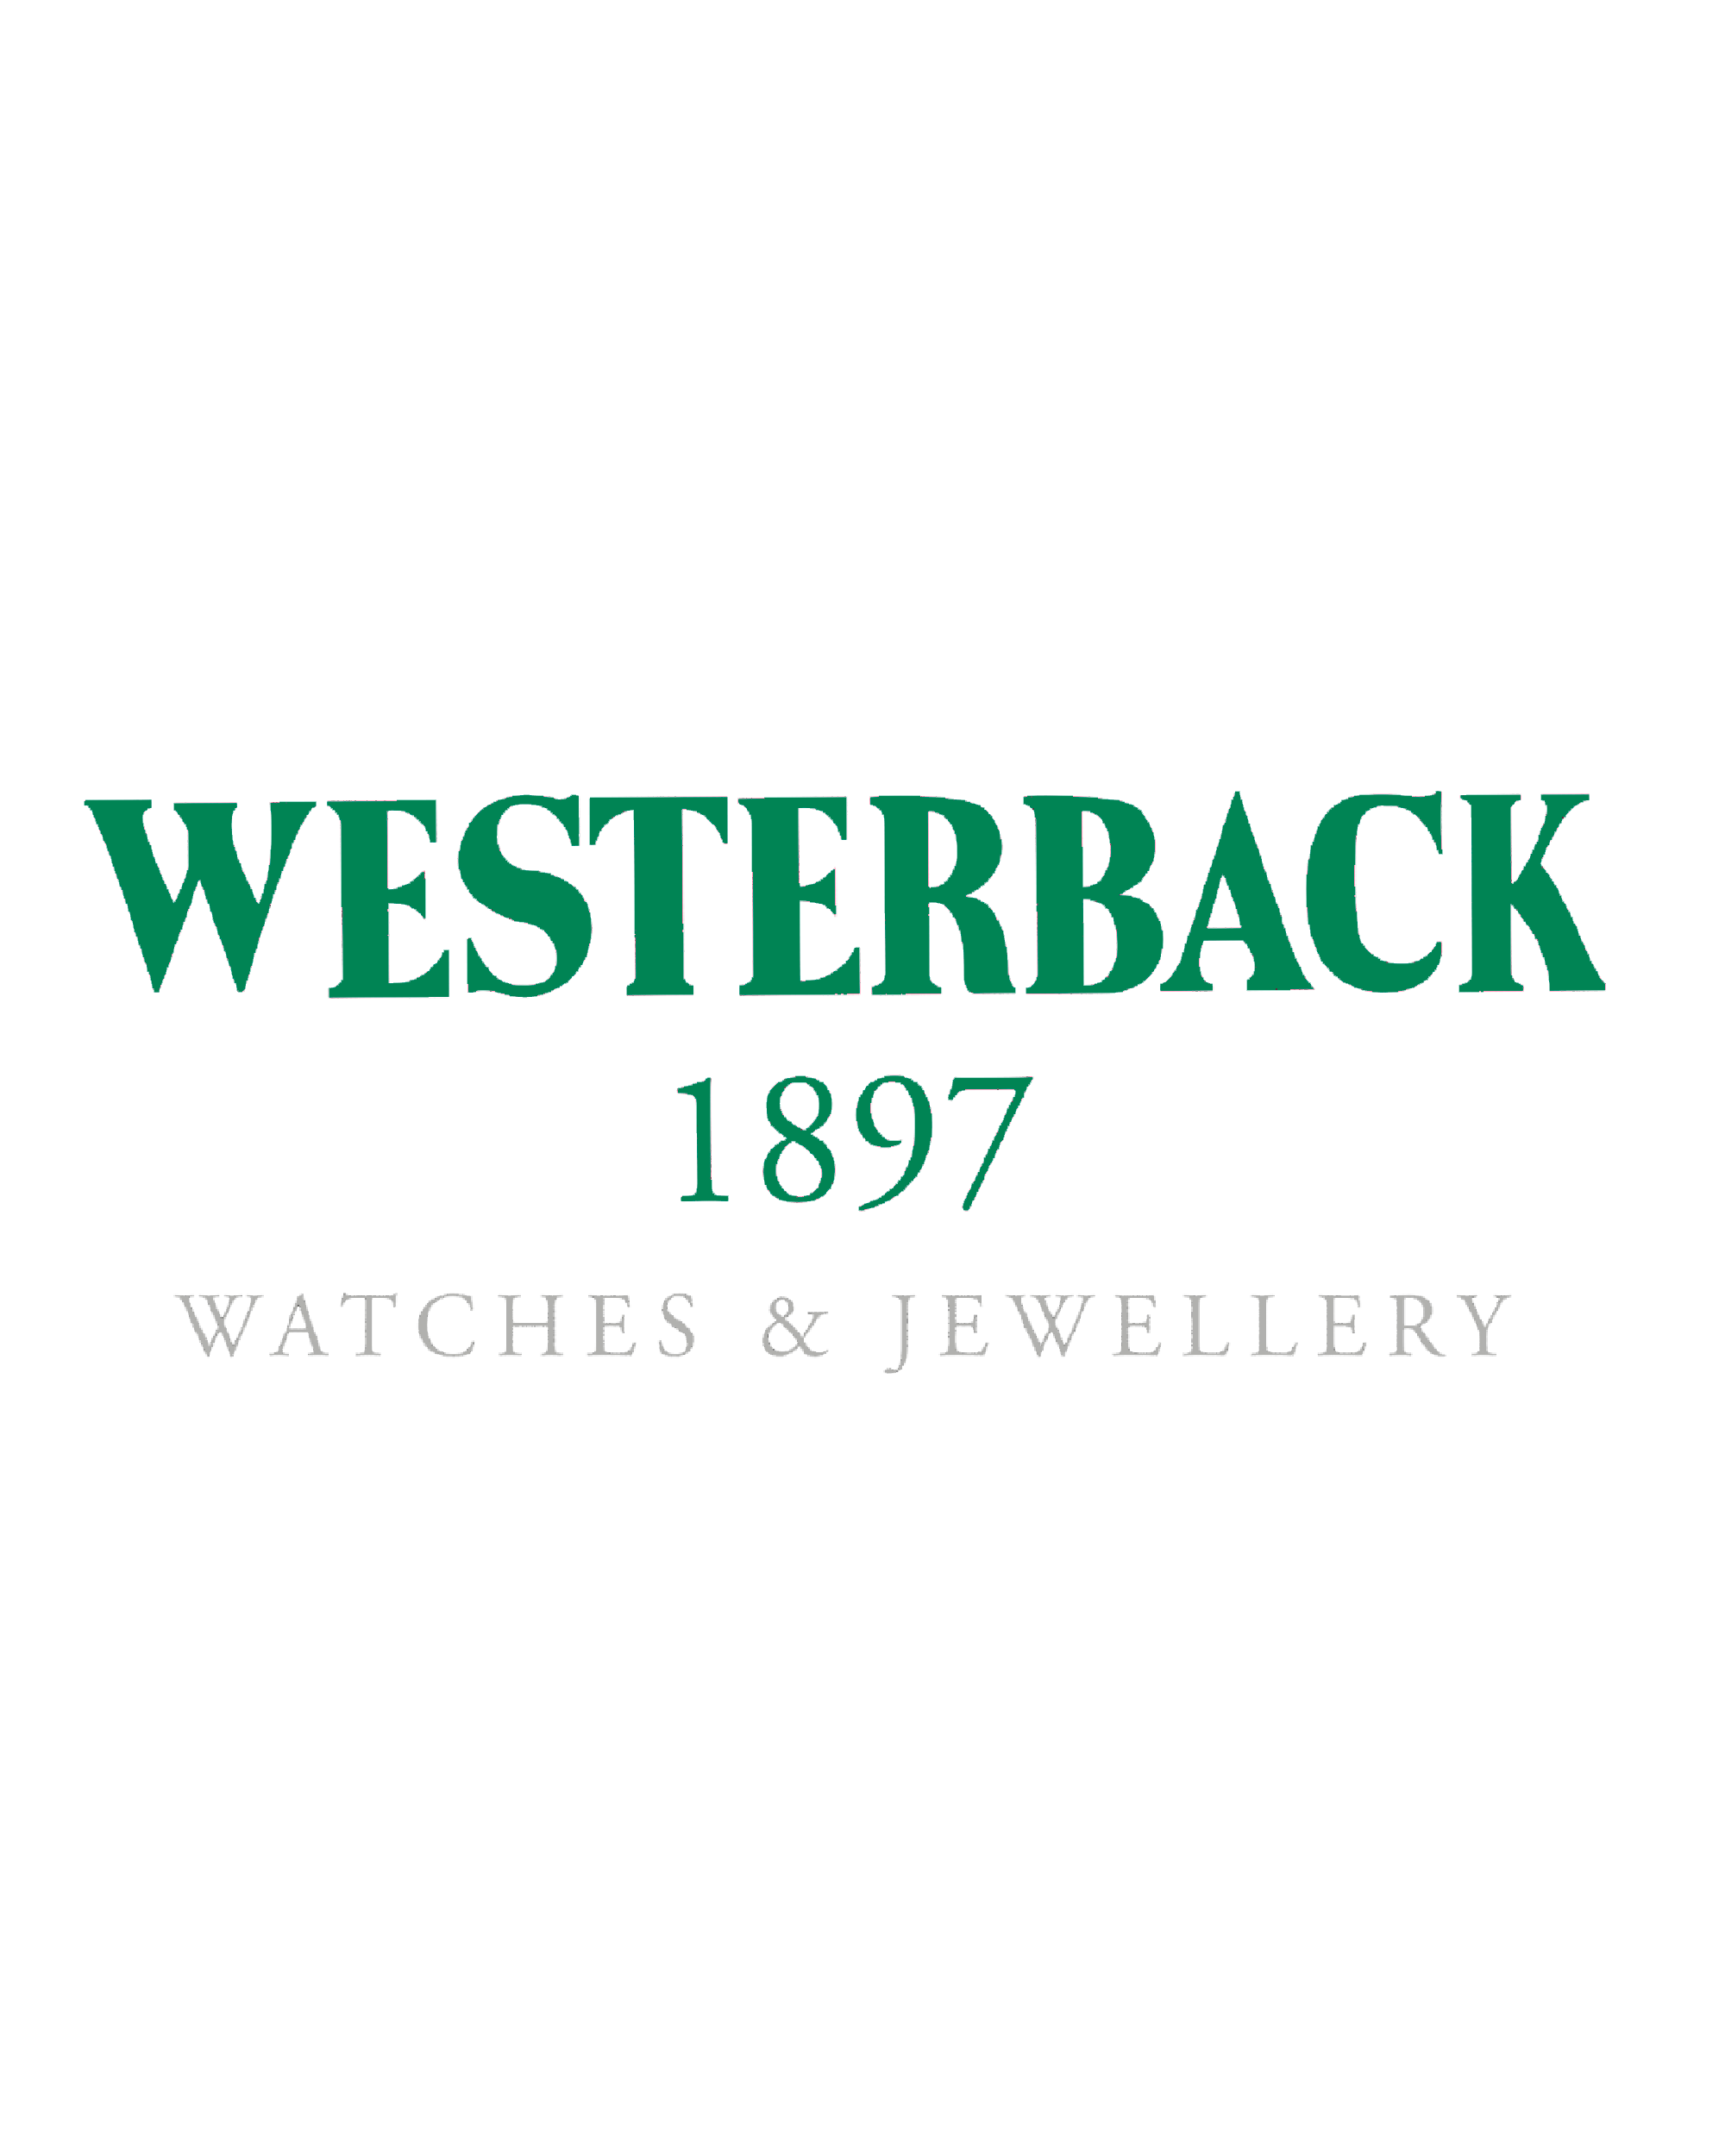 Westerback